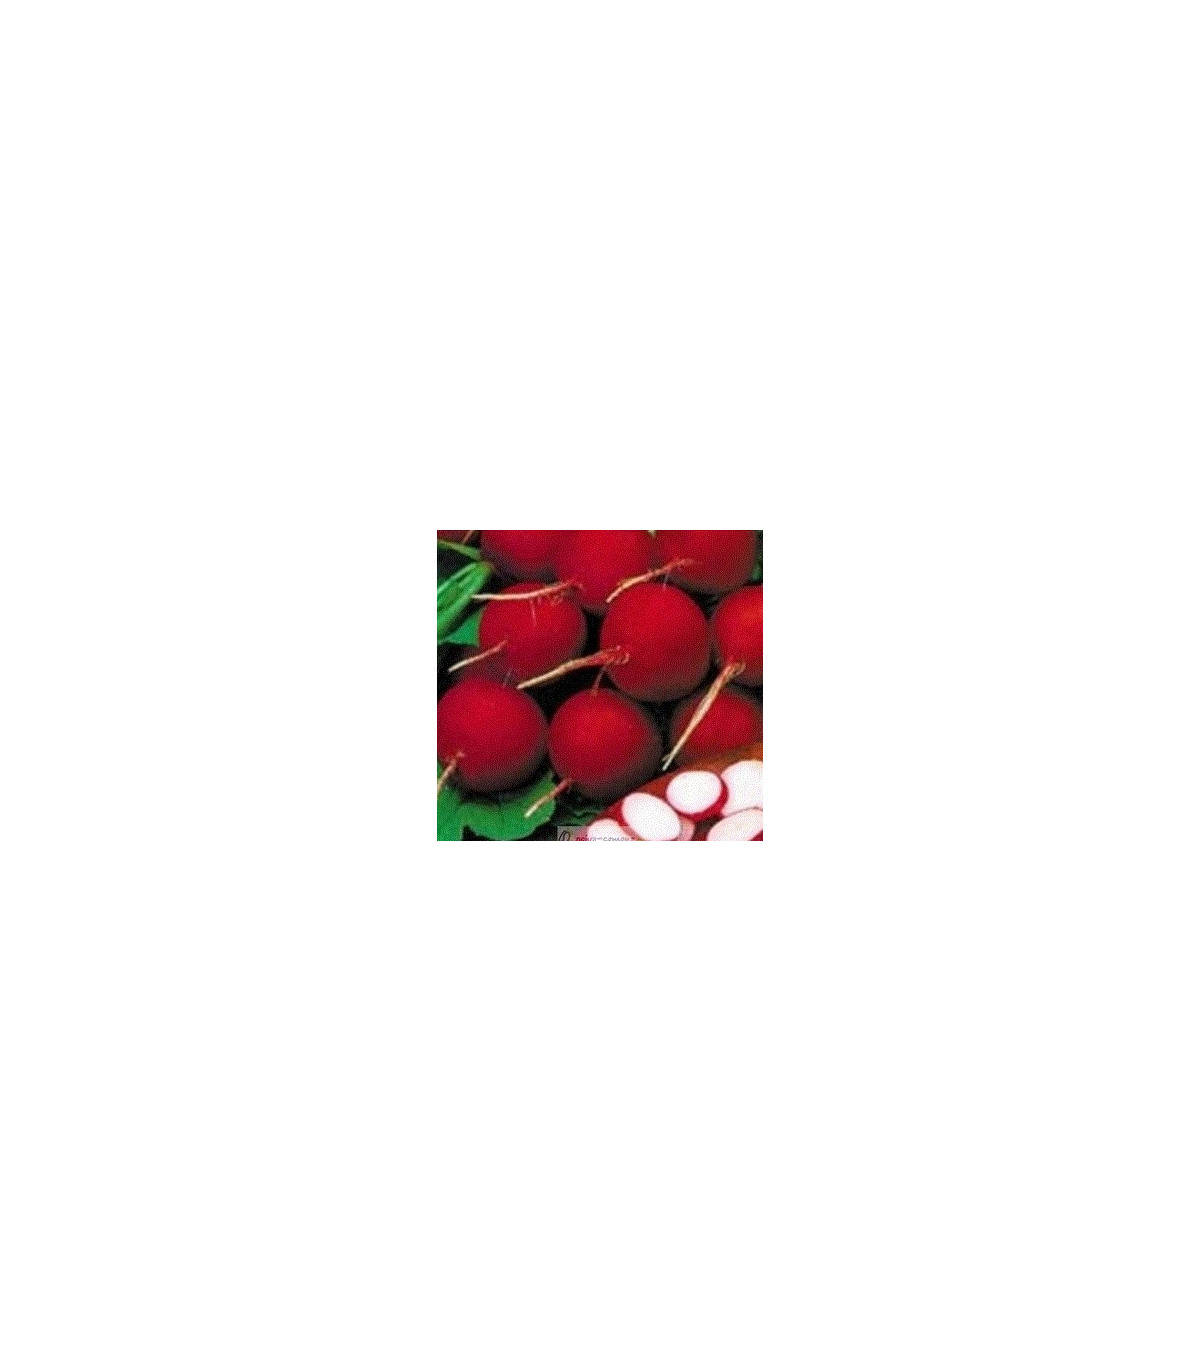 Reďkovka červená skorá - Reďkovka červená skorá - predaj semien reďkovky - 0,5 grredaj semien reďkovky - 0,5 gr